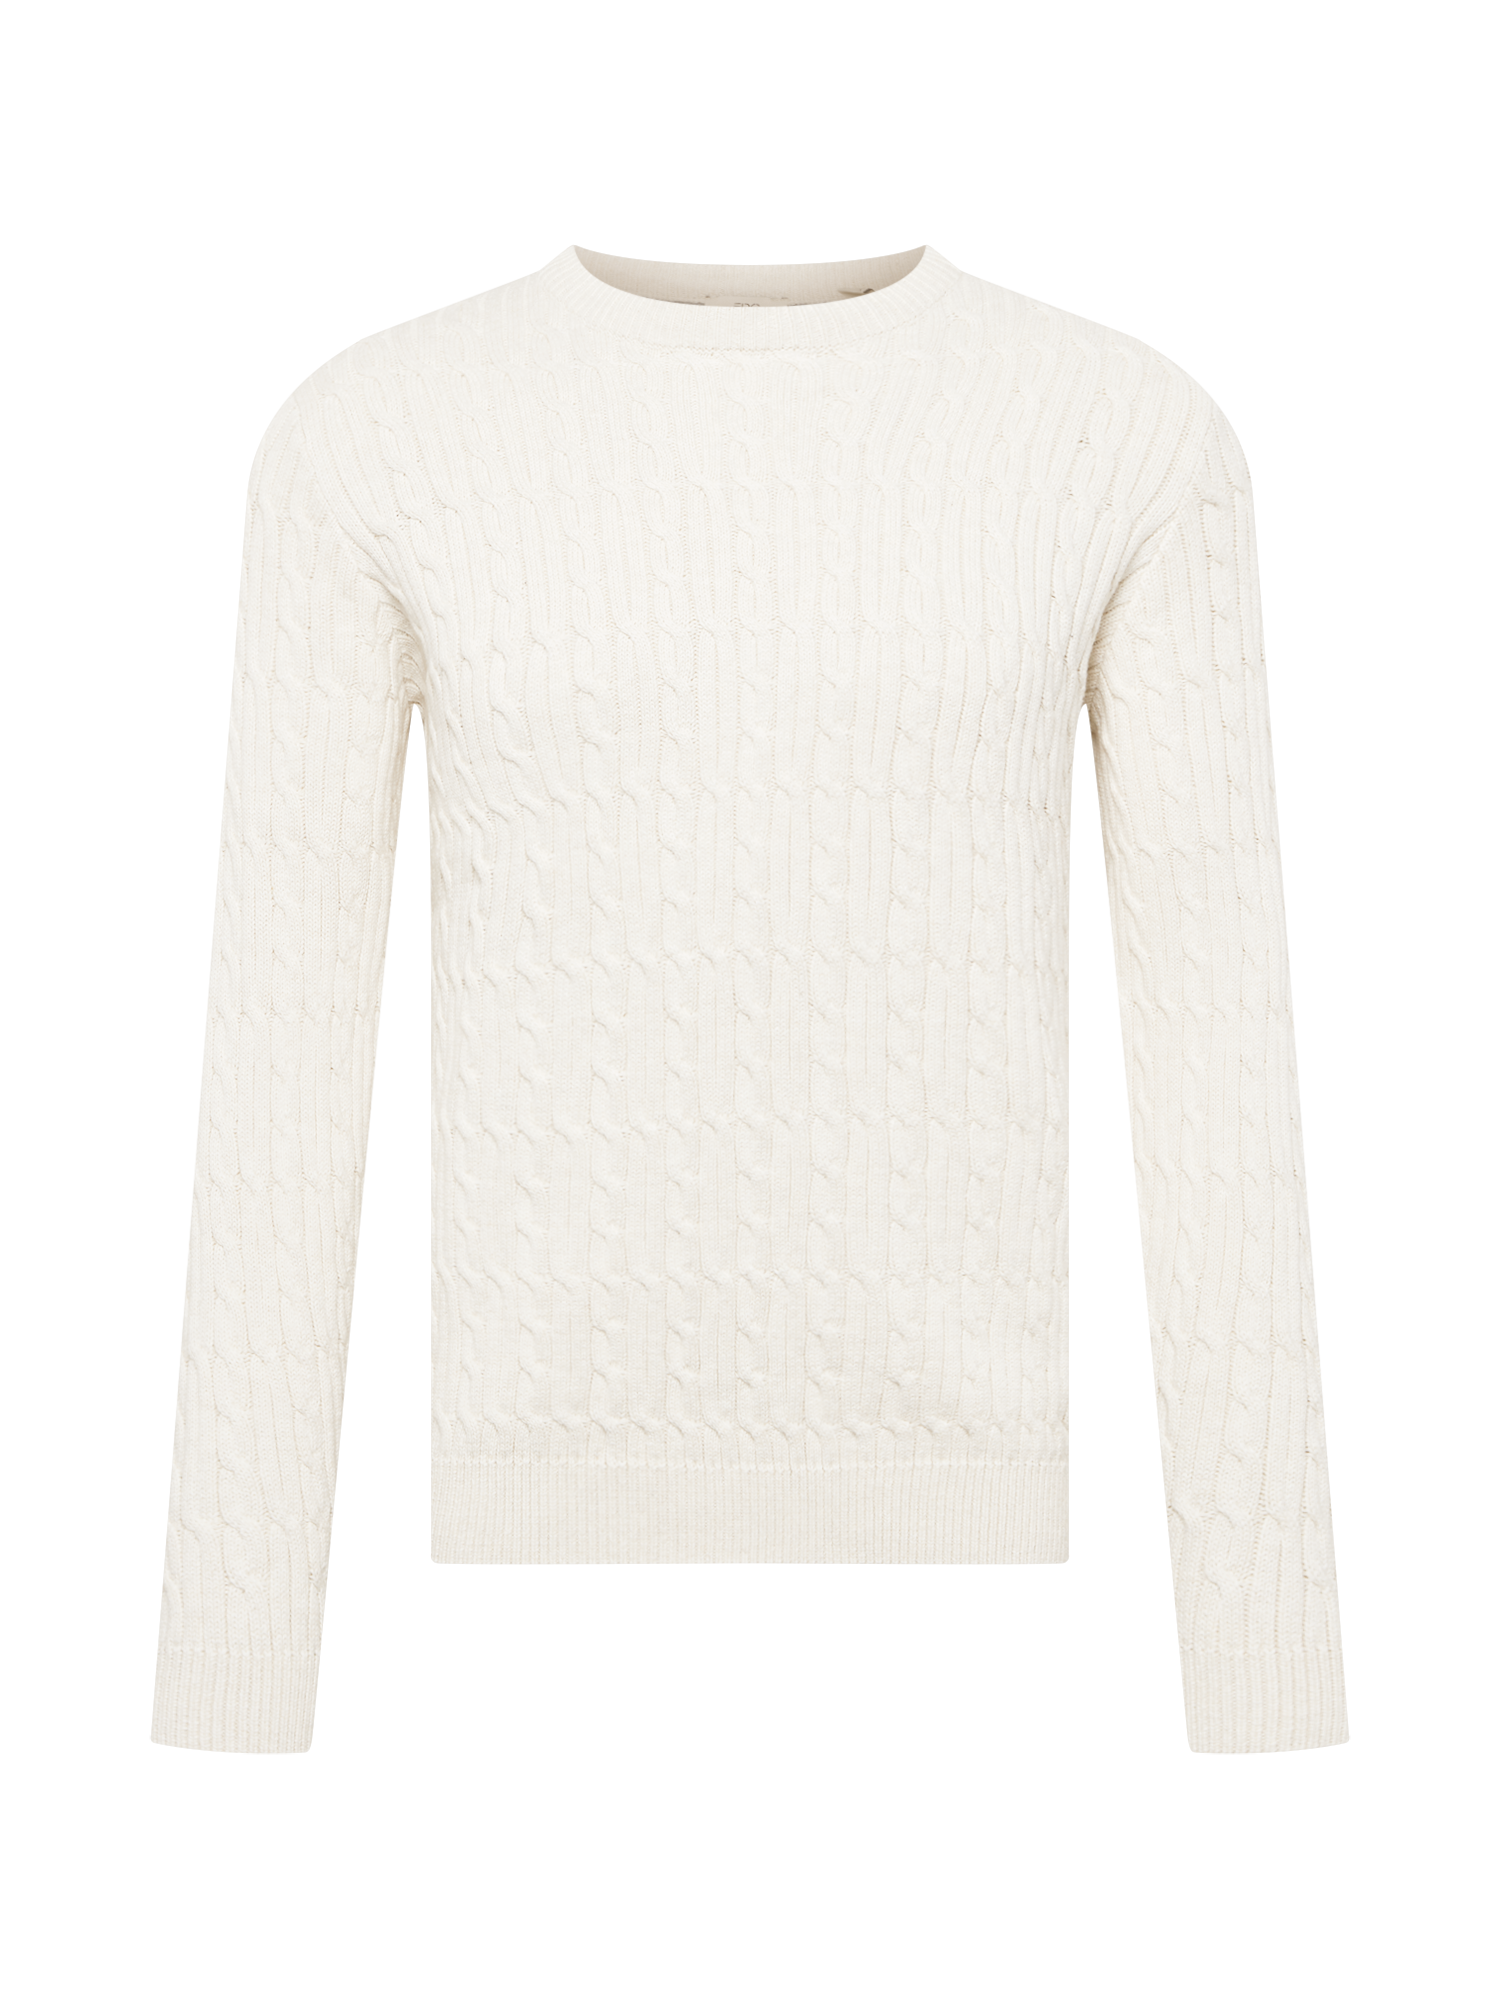 Swetry & kardigany RMLUI EDC BY ESPRIT Sweter w kolorze Białym 